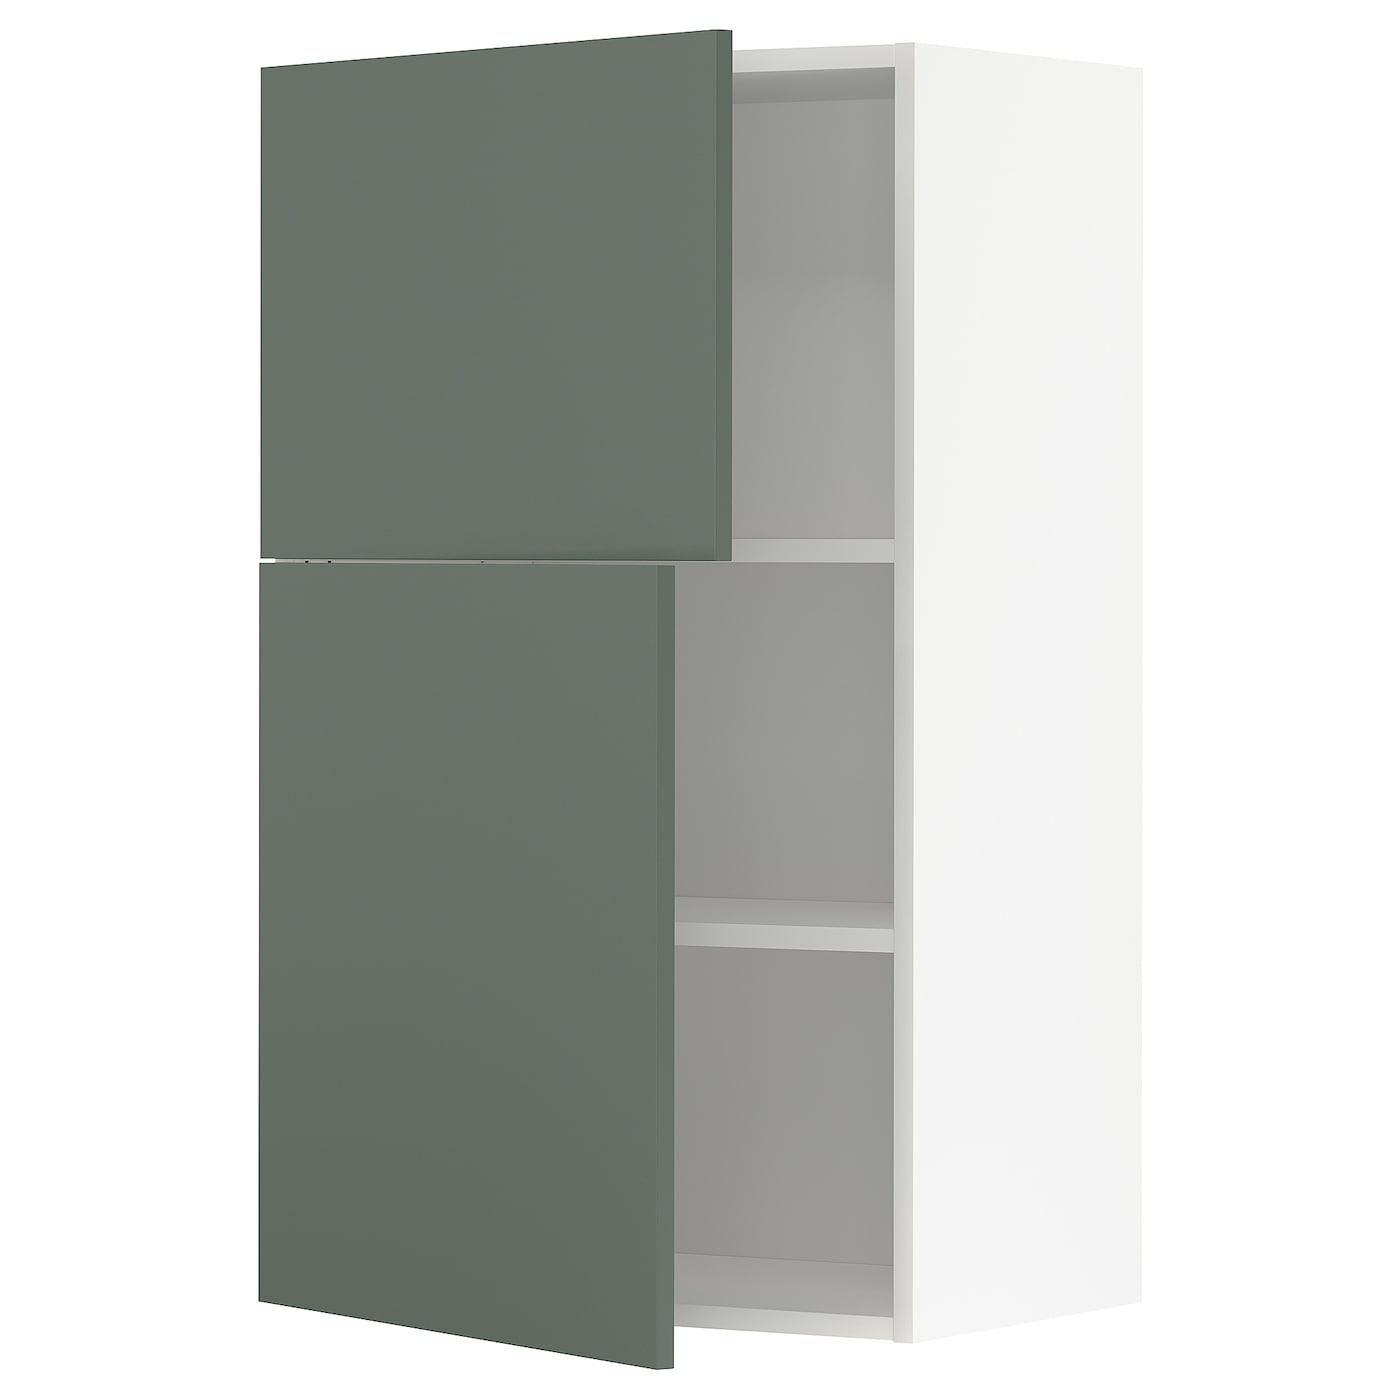 Навесной шкаф с полкой - METOD IKEA/ МЕТОД ИКЕА, 100х60 см, белый/темно-зеленый